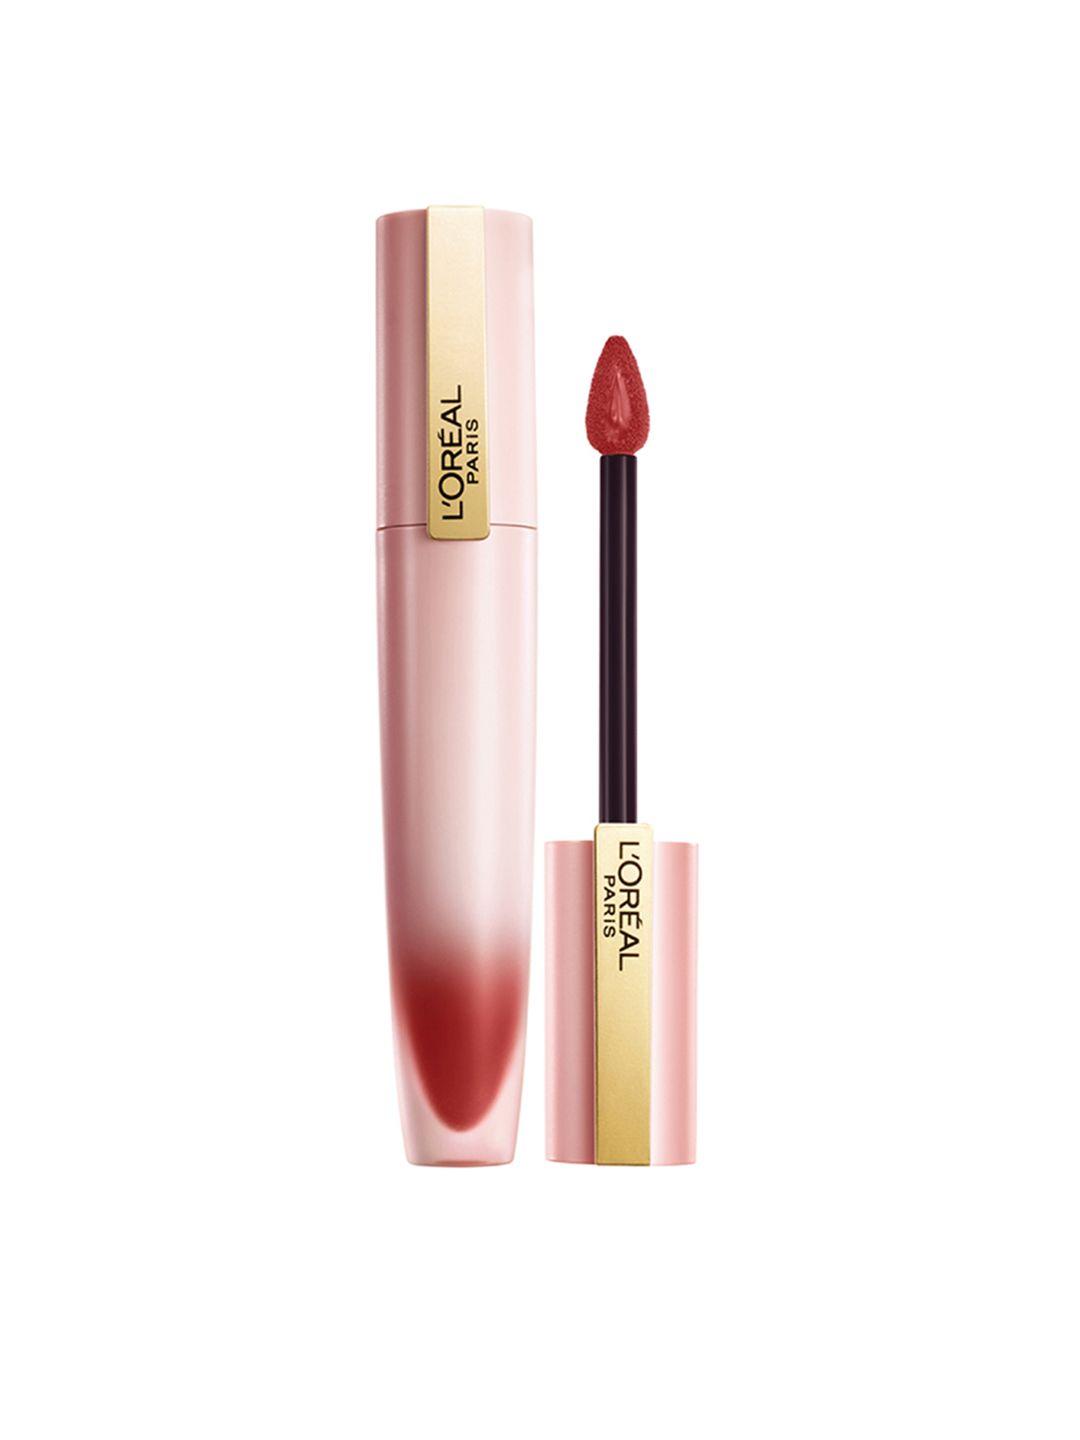 loreal paris chiffon signature liquid lipstick 7ml - impassion 222